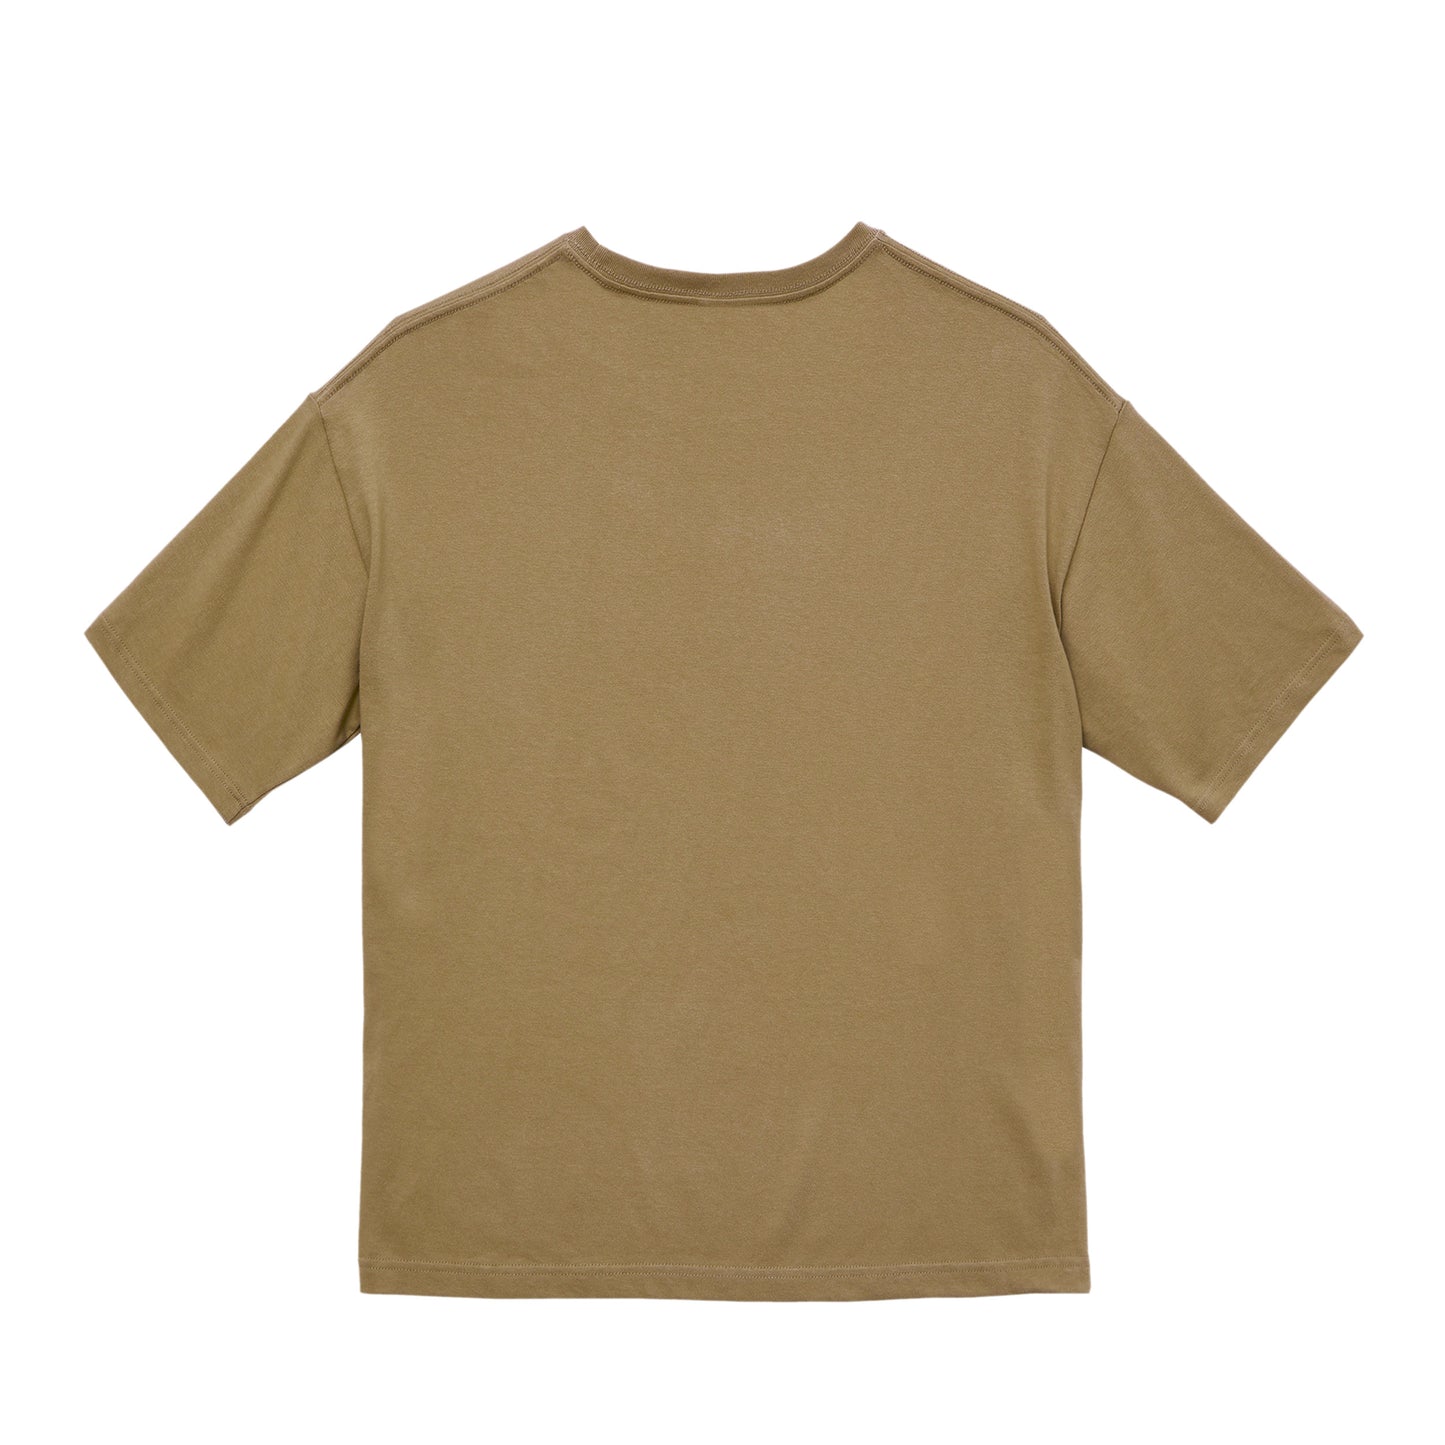 【アウトレット】Classic Col. / BIG silhouette Crewneck T-shirt